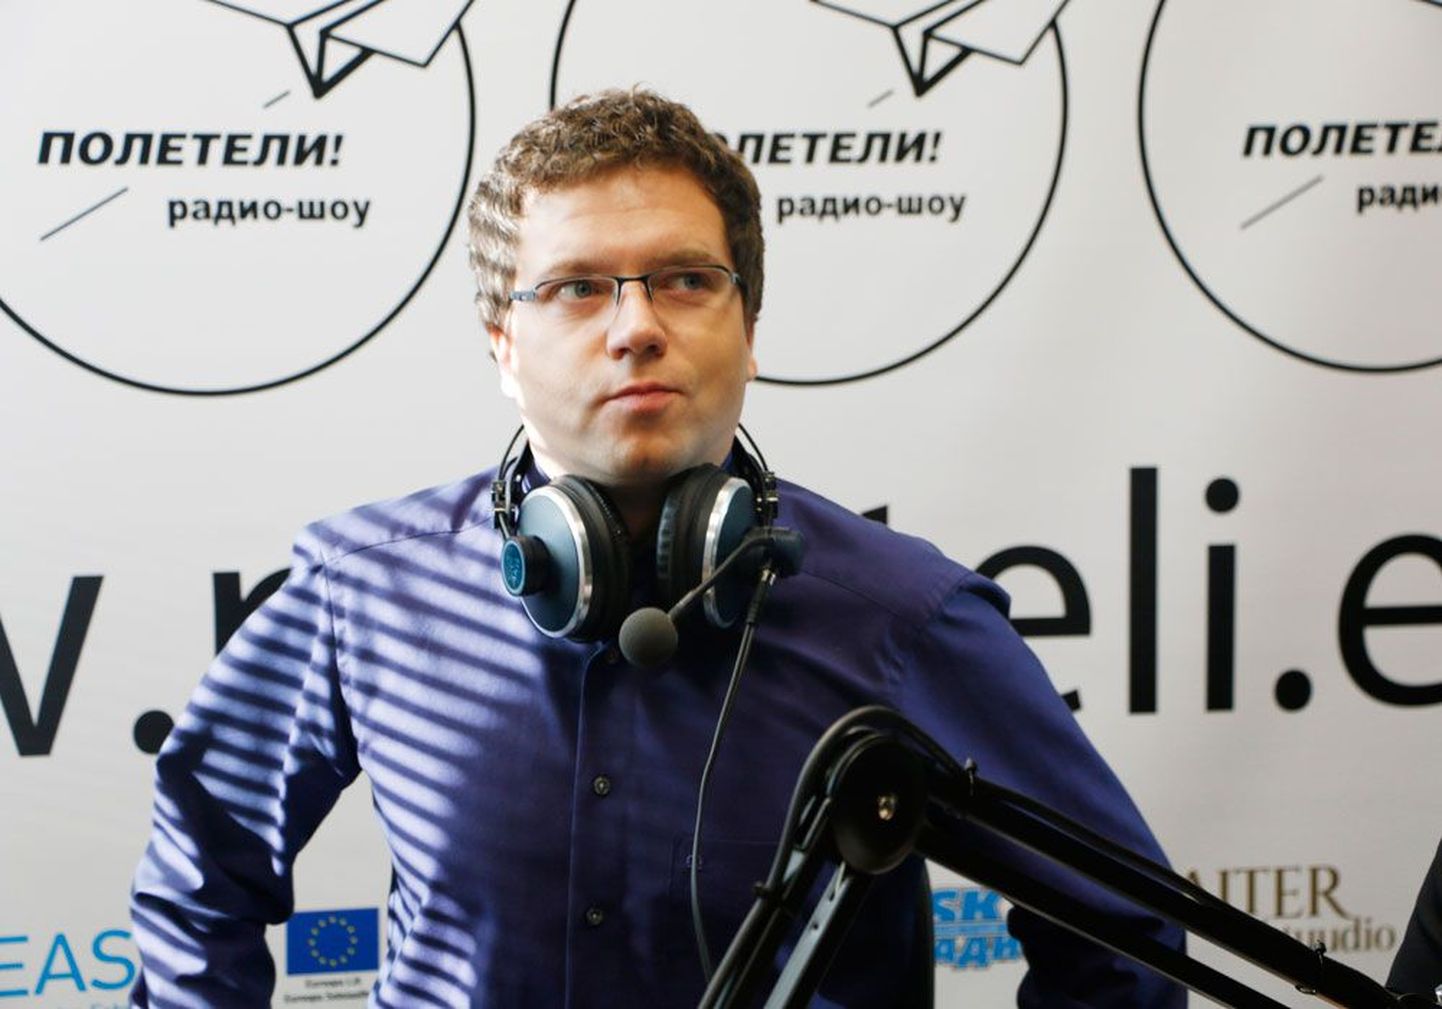 Серийный предприниматель Евгений Савицкий вместе с ведущими радиошоу «Полетели!» попытался разобраться в том, как сделать свой бизнес более заметным.